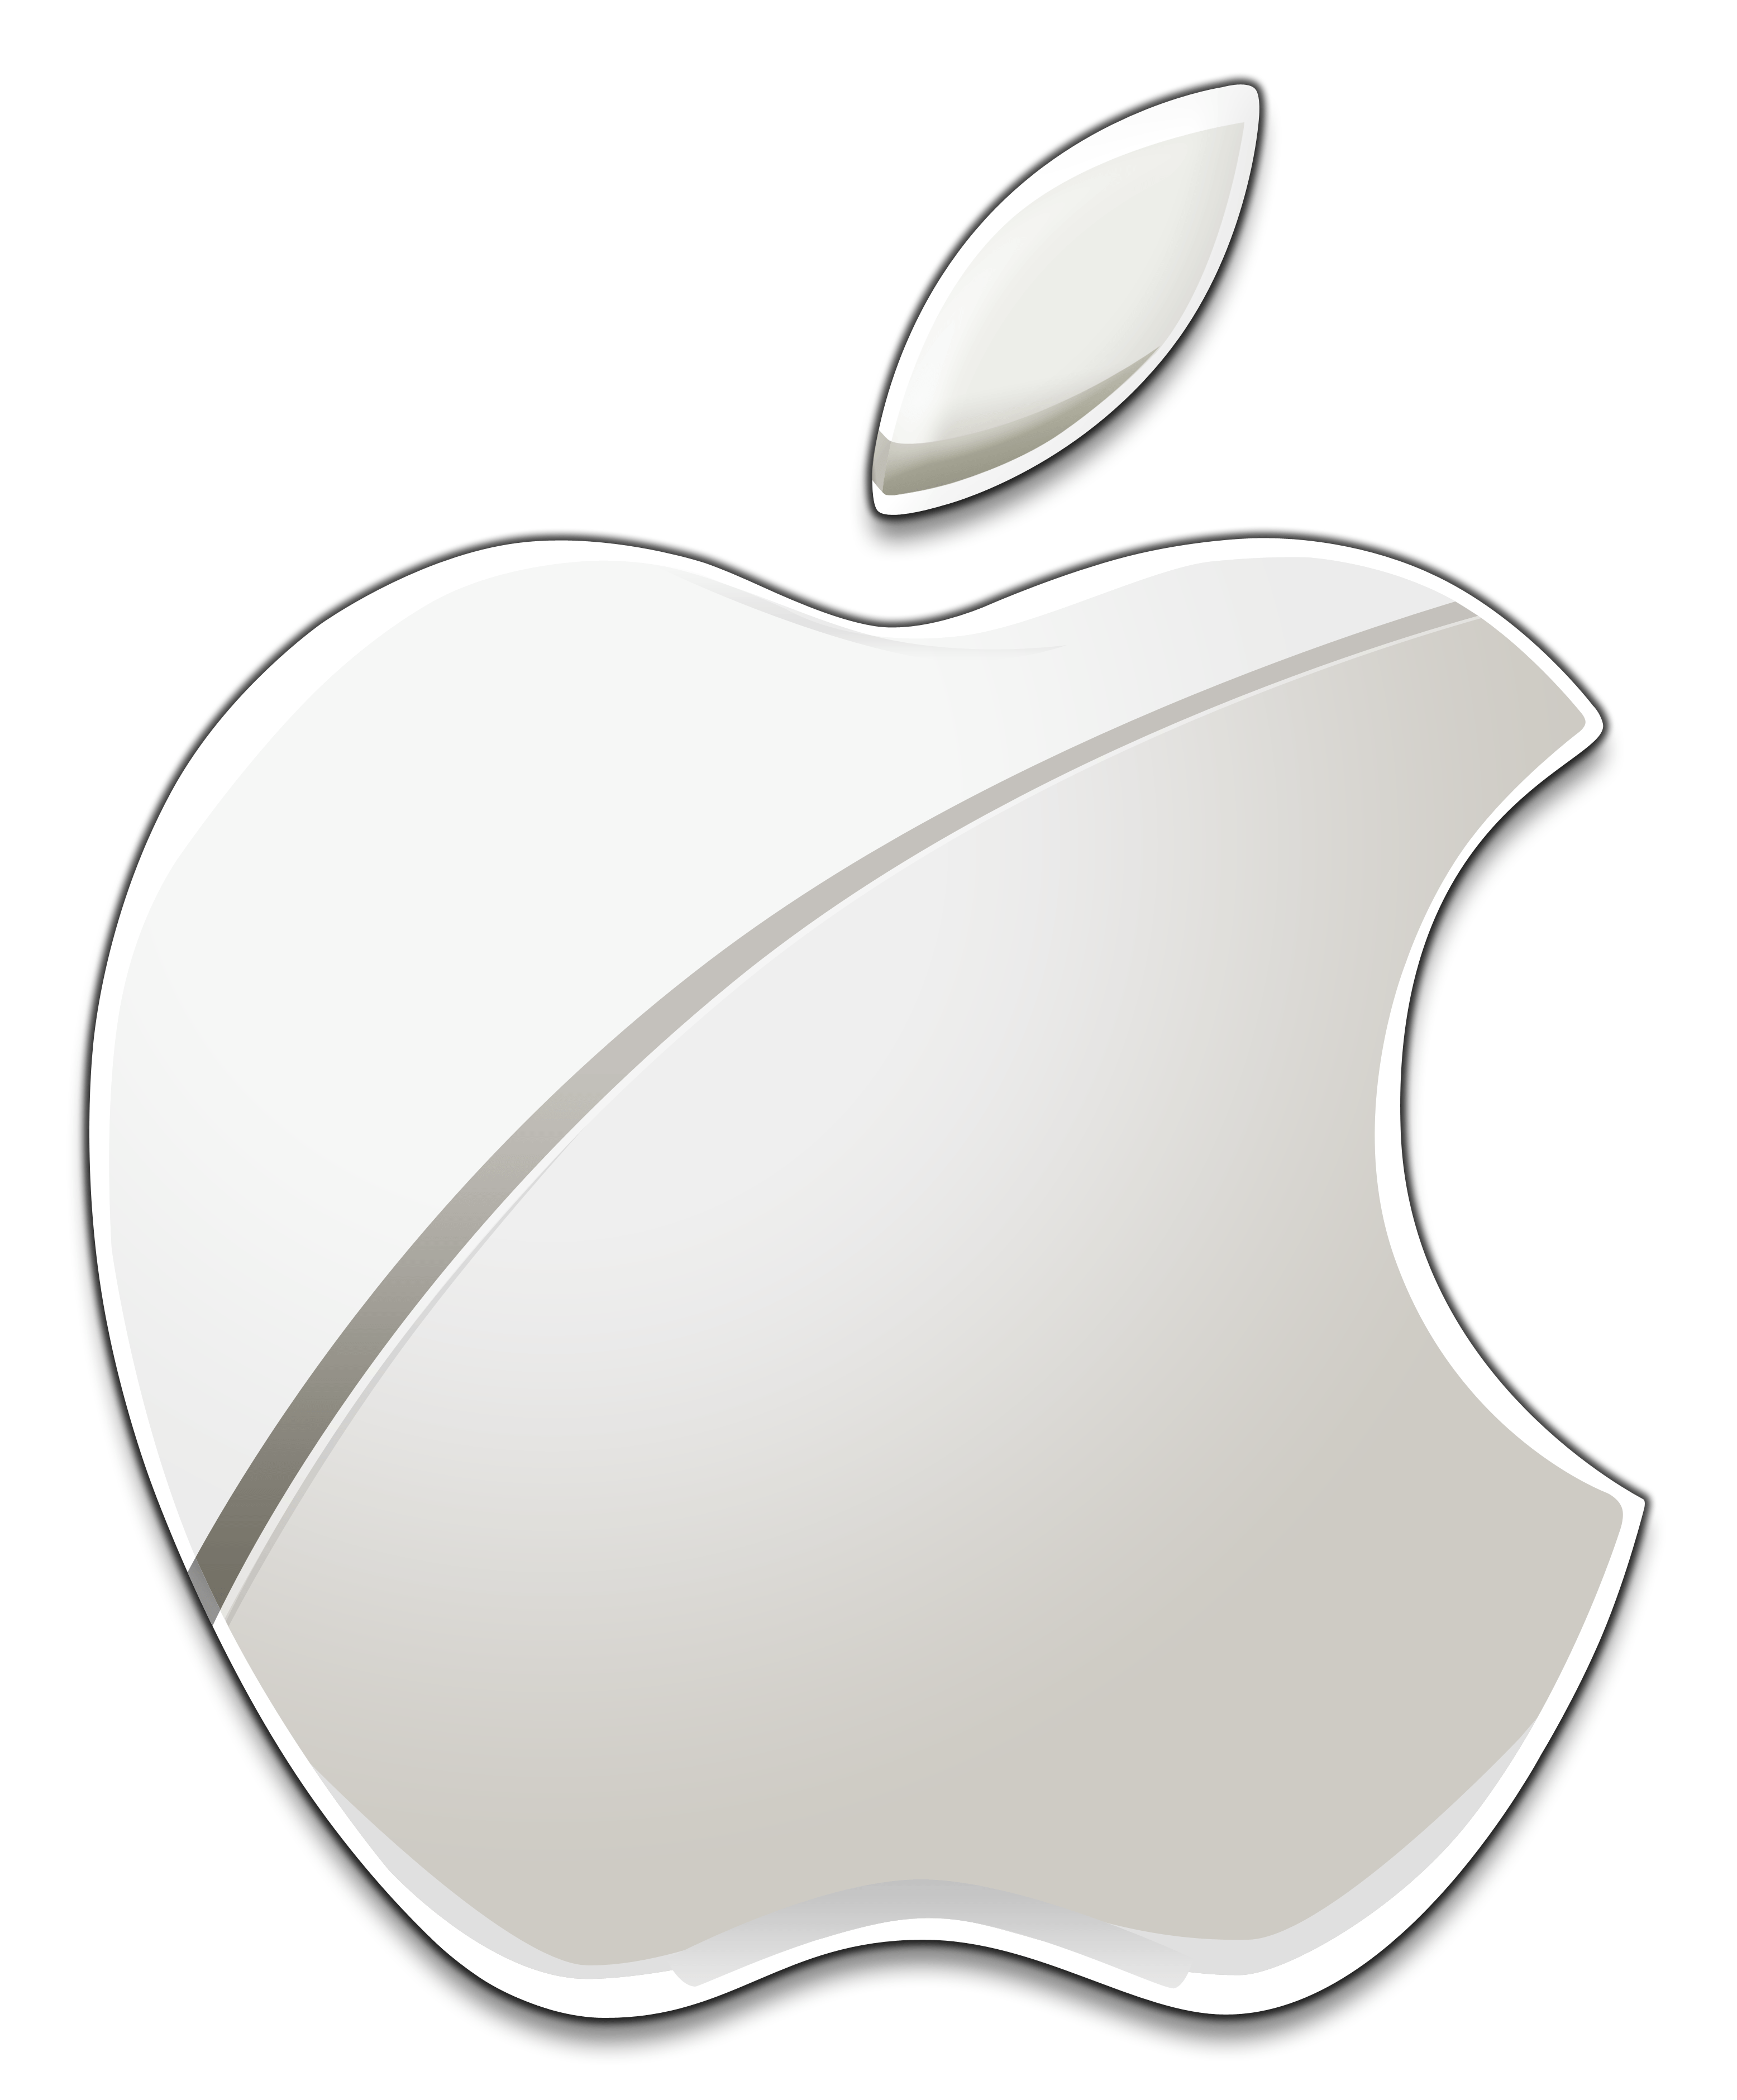 Transparent Apple Logo - Apple Logo PNG Image Transparent Free Download